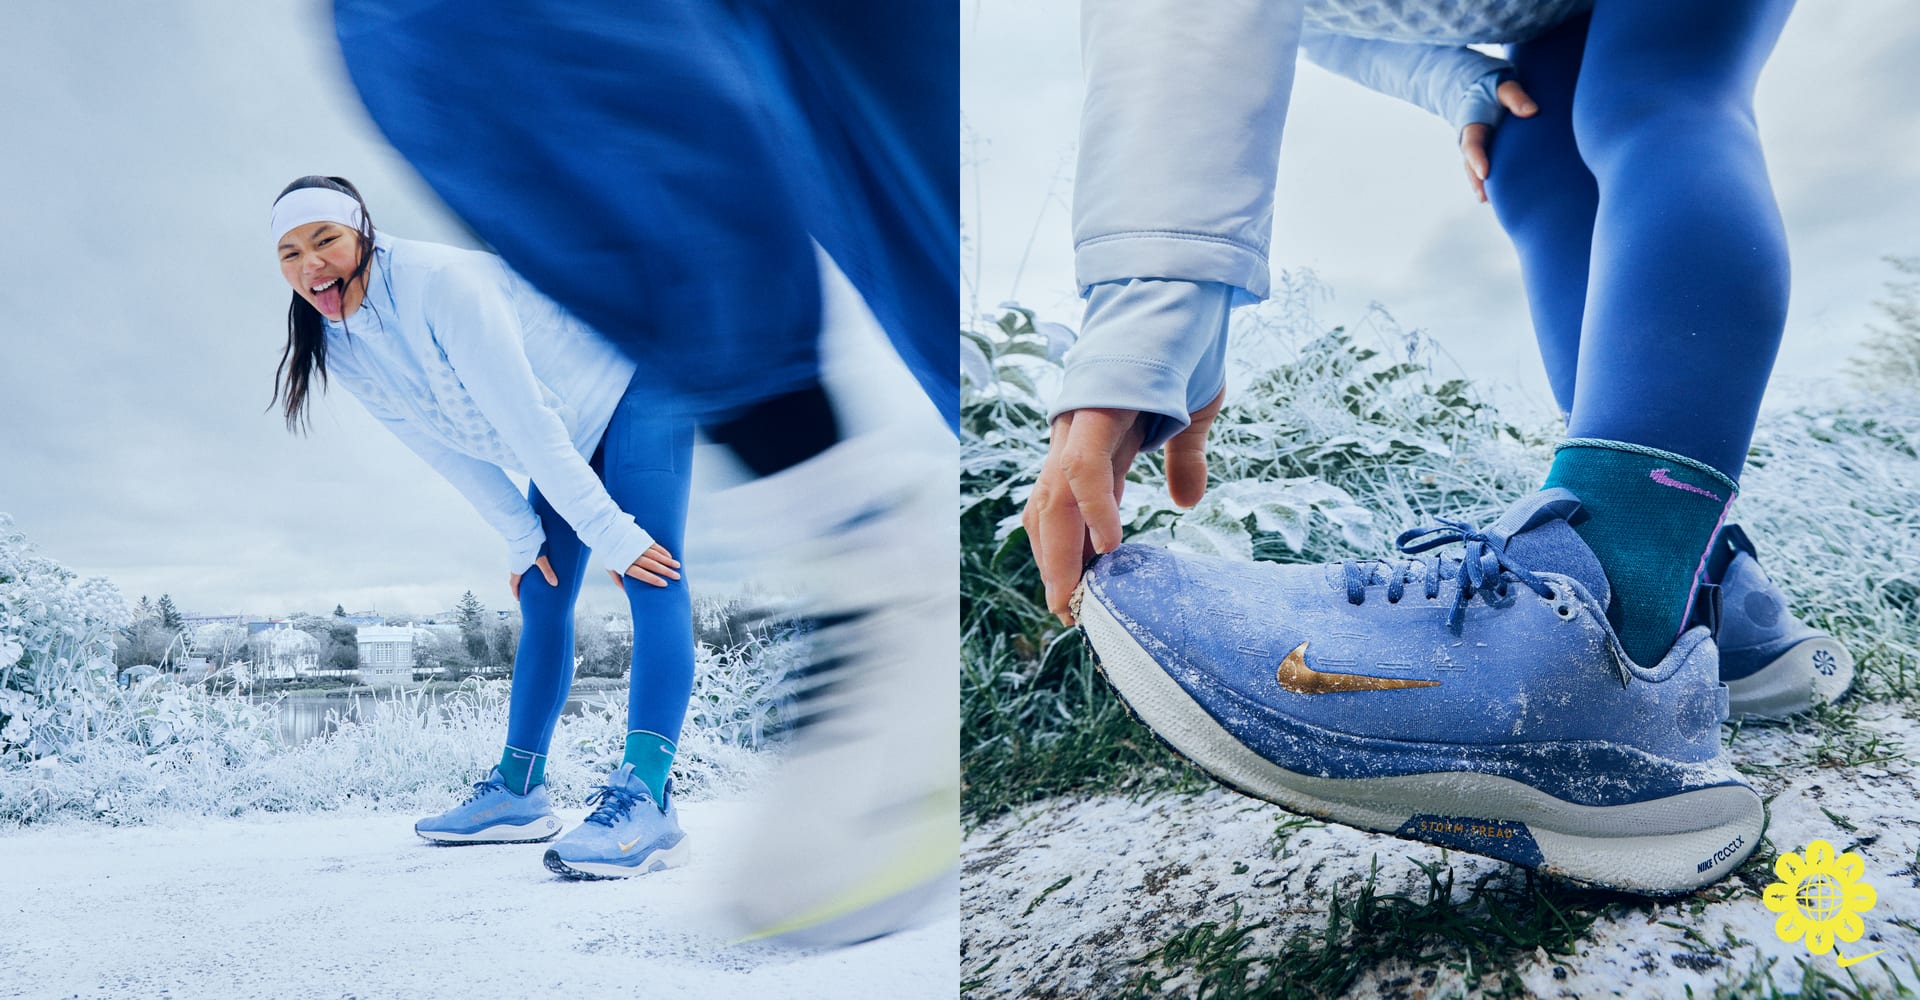 Nike InfinityRN 4 GORE-TEX Zapatillas de running para asfalto